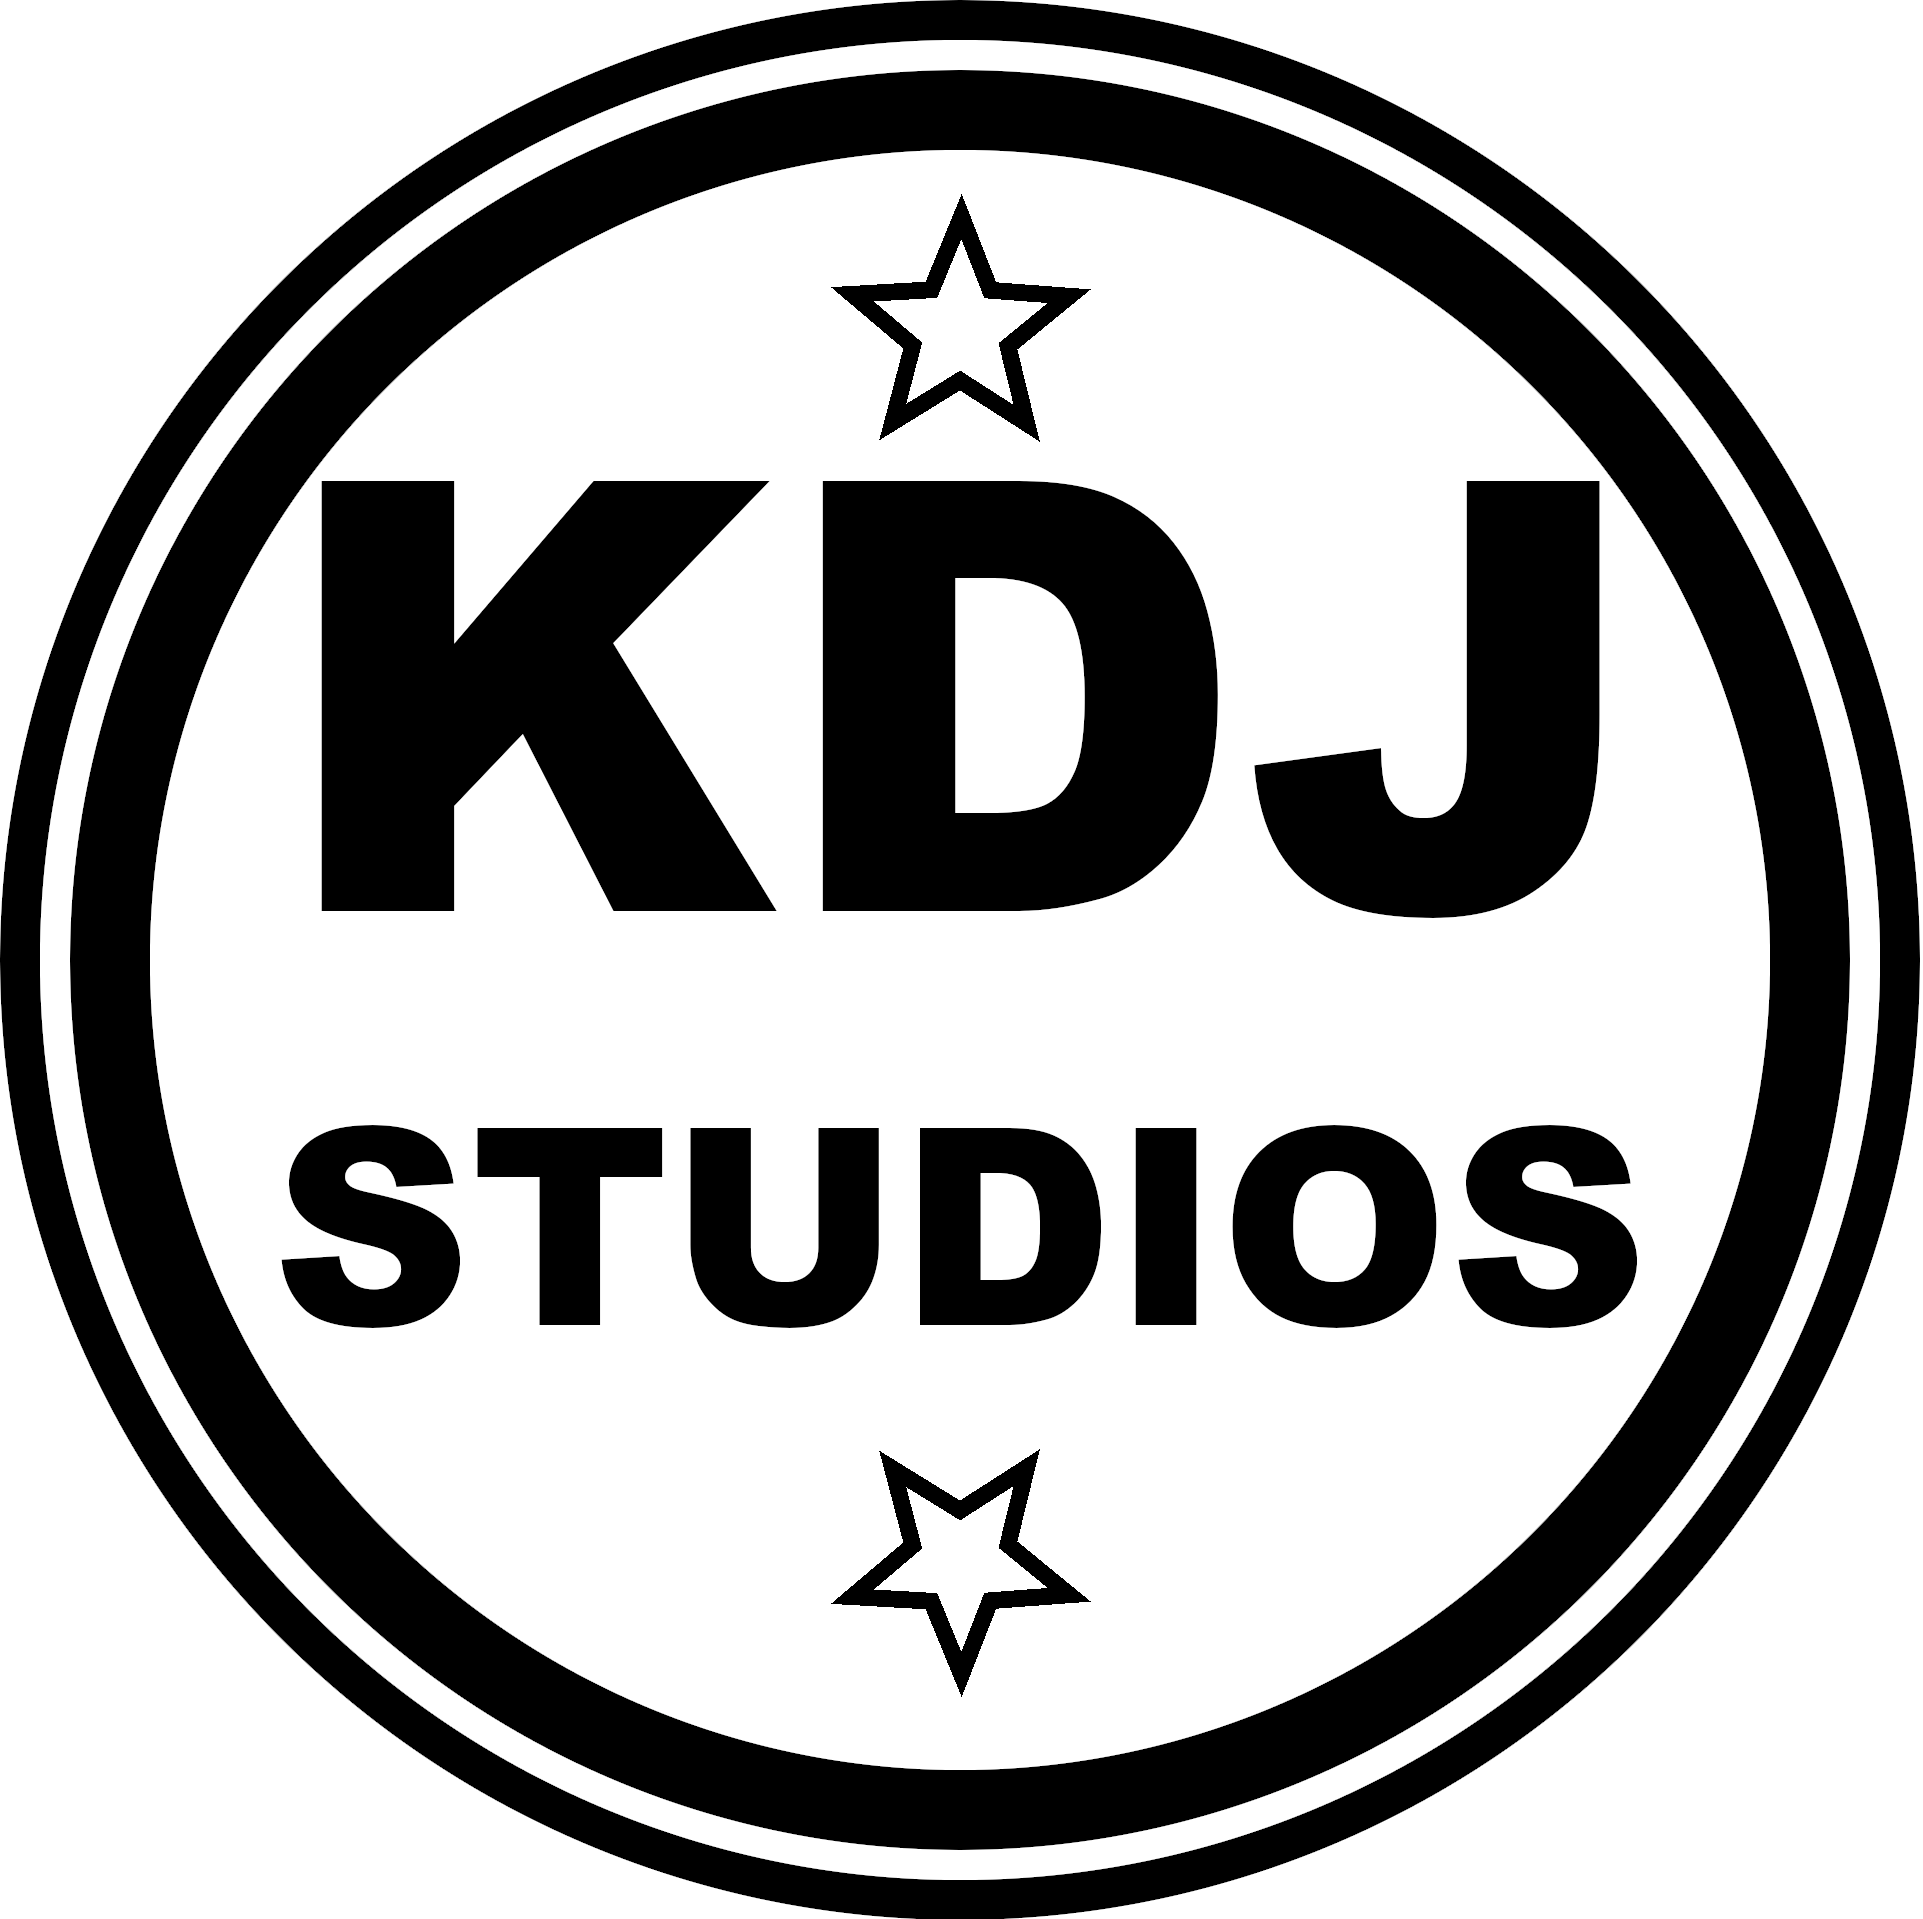 KDJ Studios